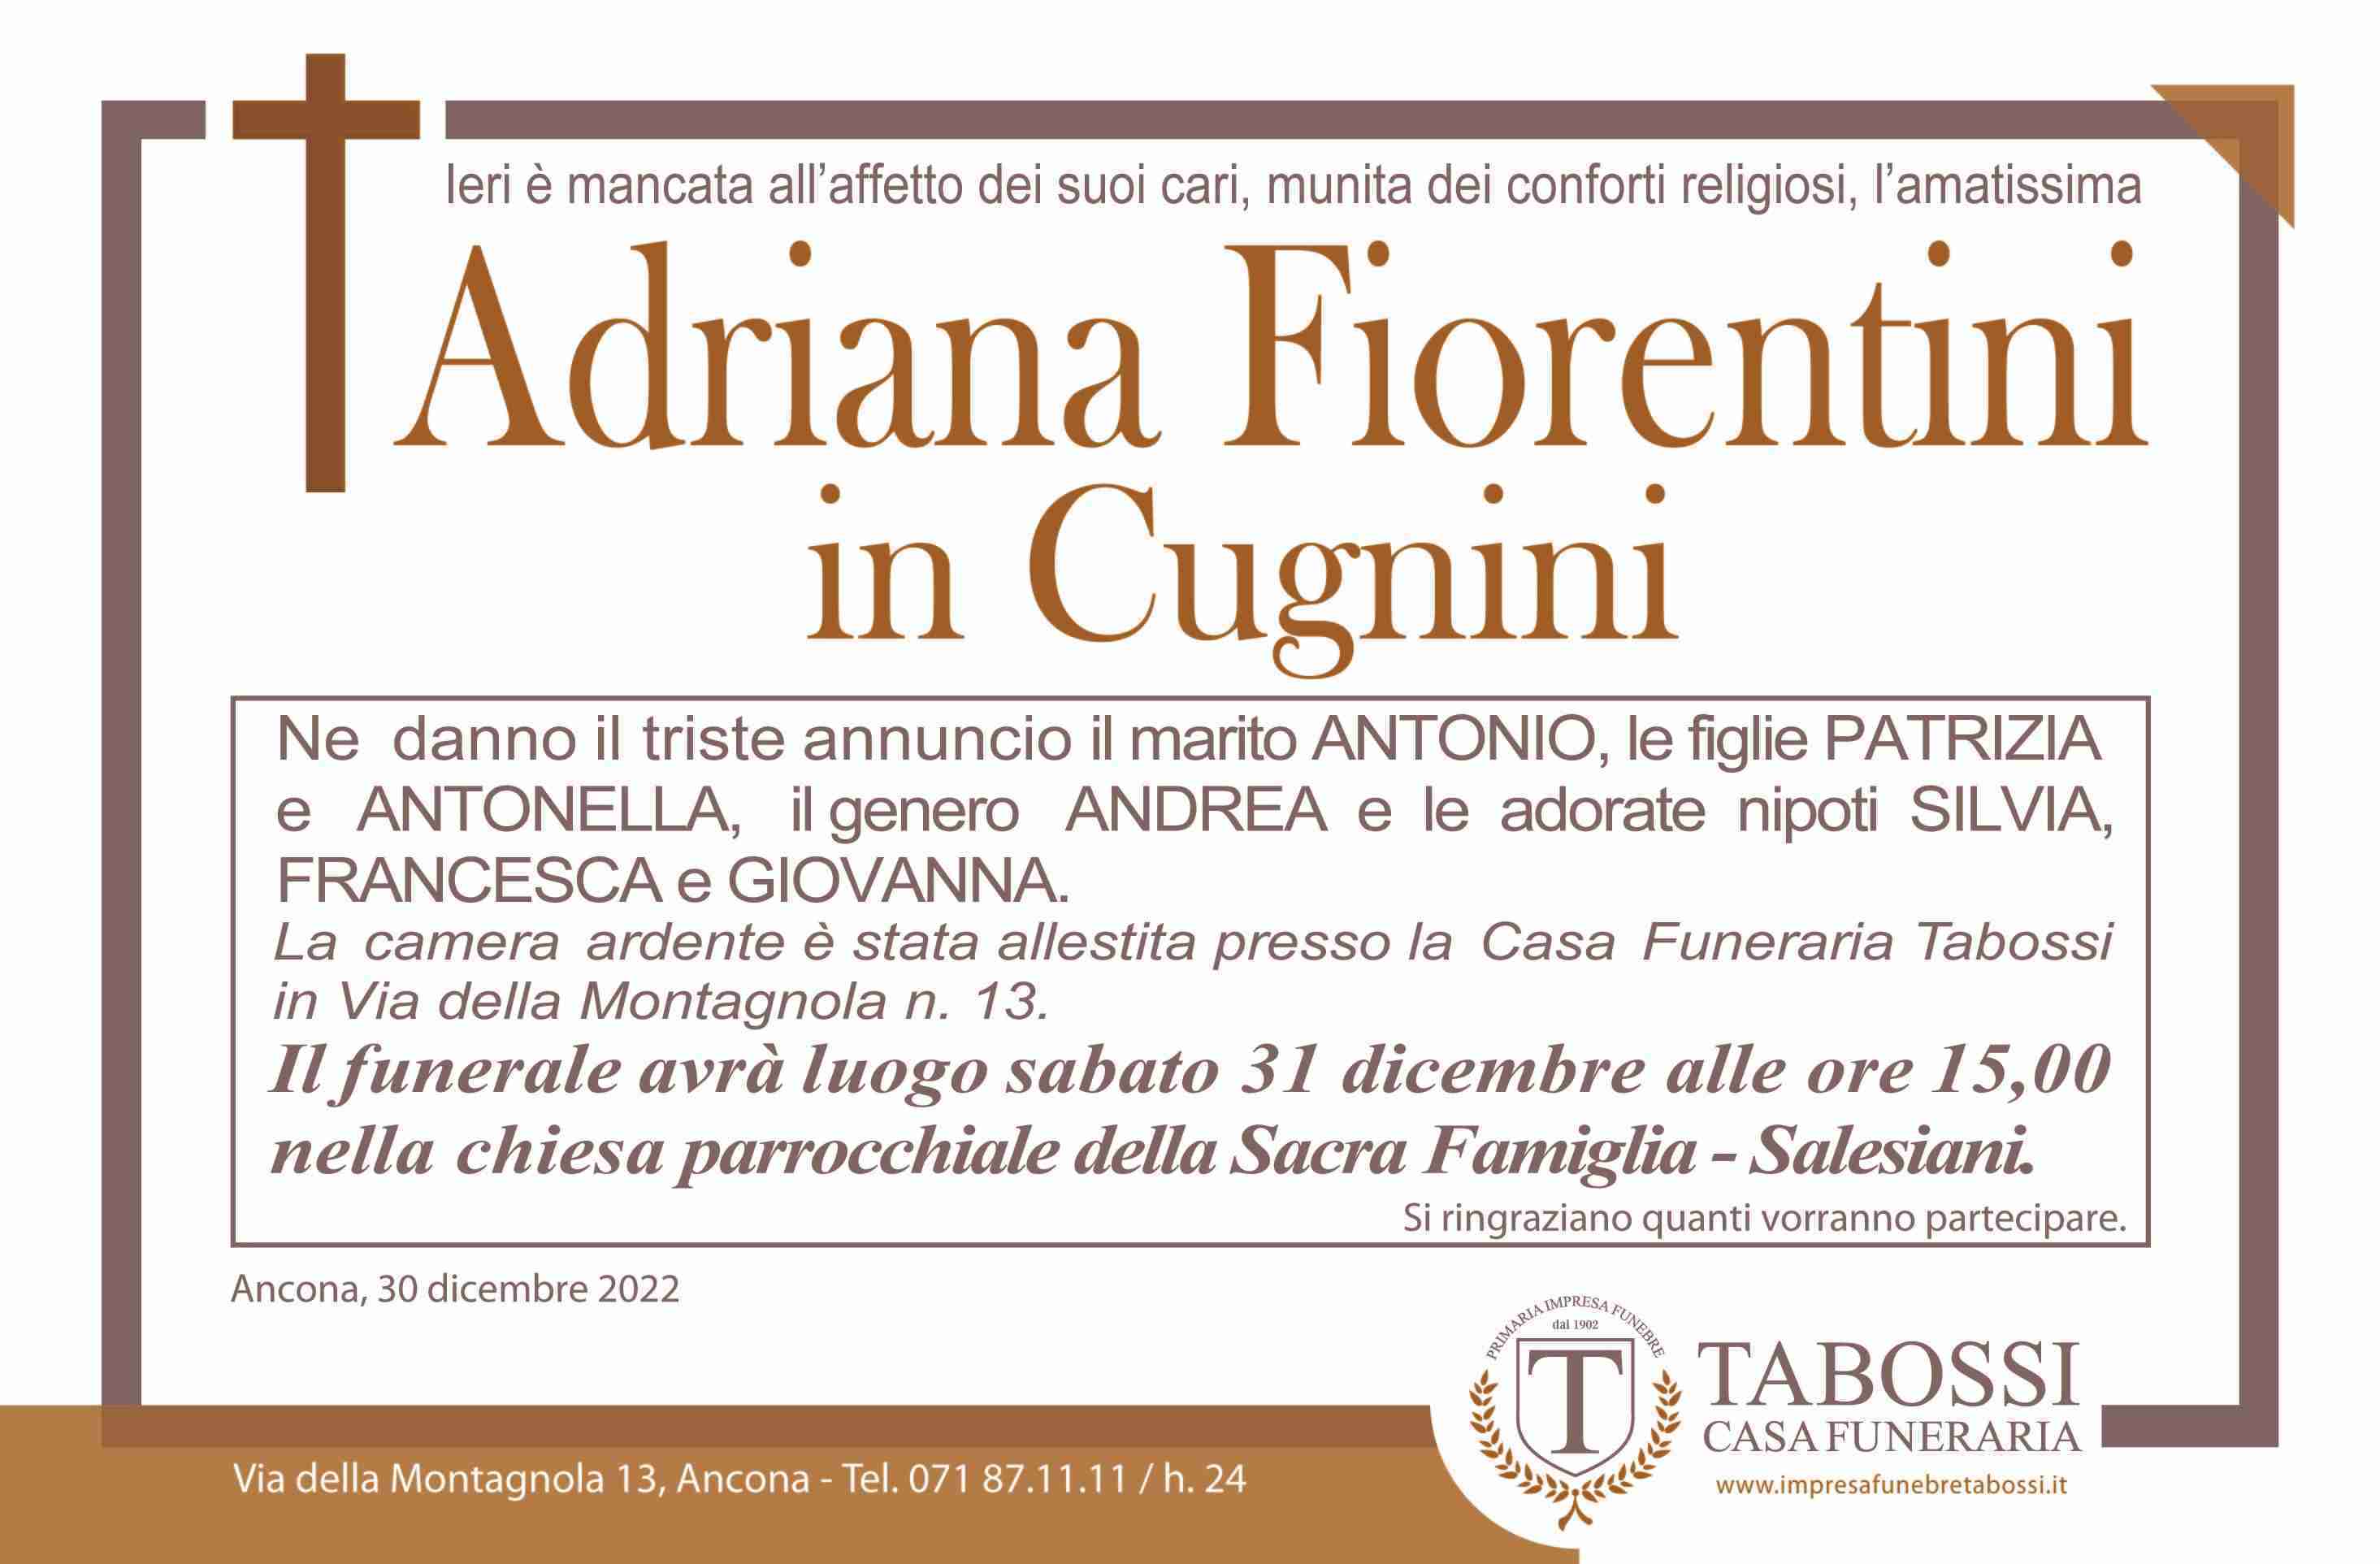 Adriana Fiorentini